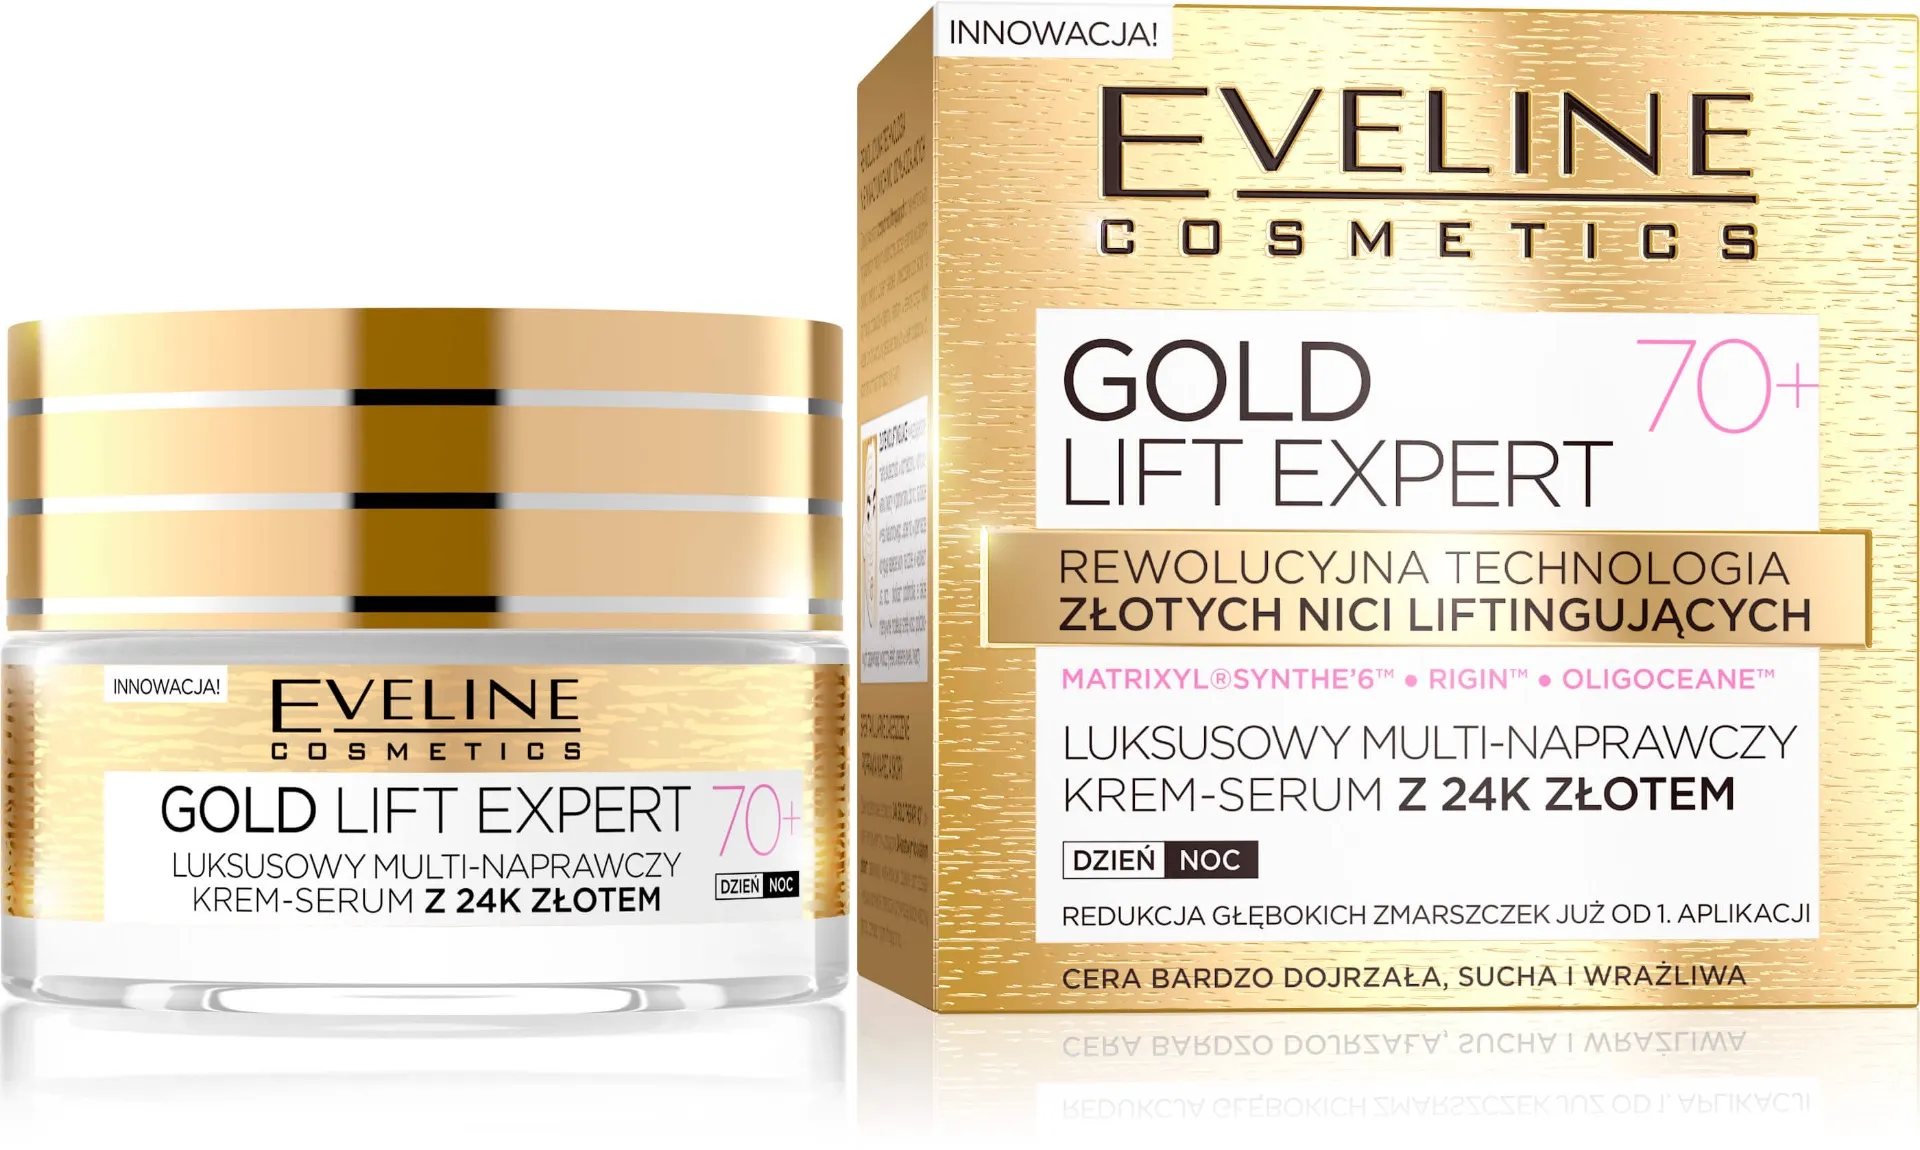 Eveline Cosmetics Gold Lift Expert  Luksusowy multi-naprawczy krem-serum z 24 złotem, 70+, 50 ml